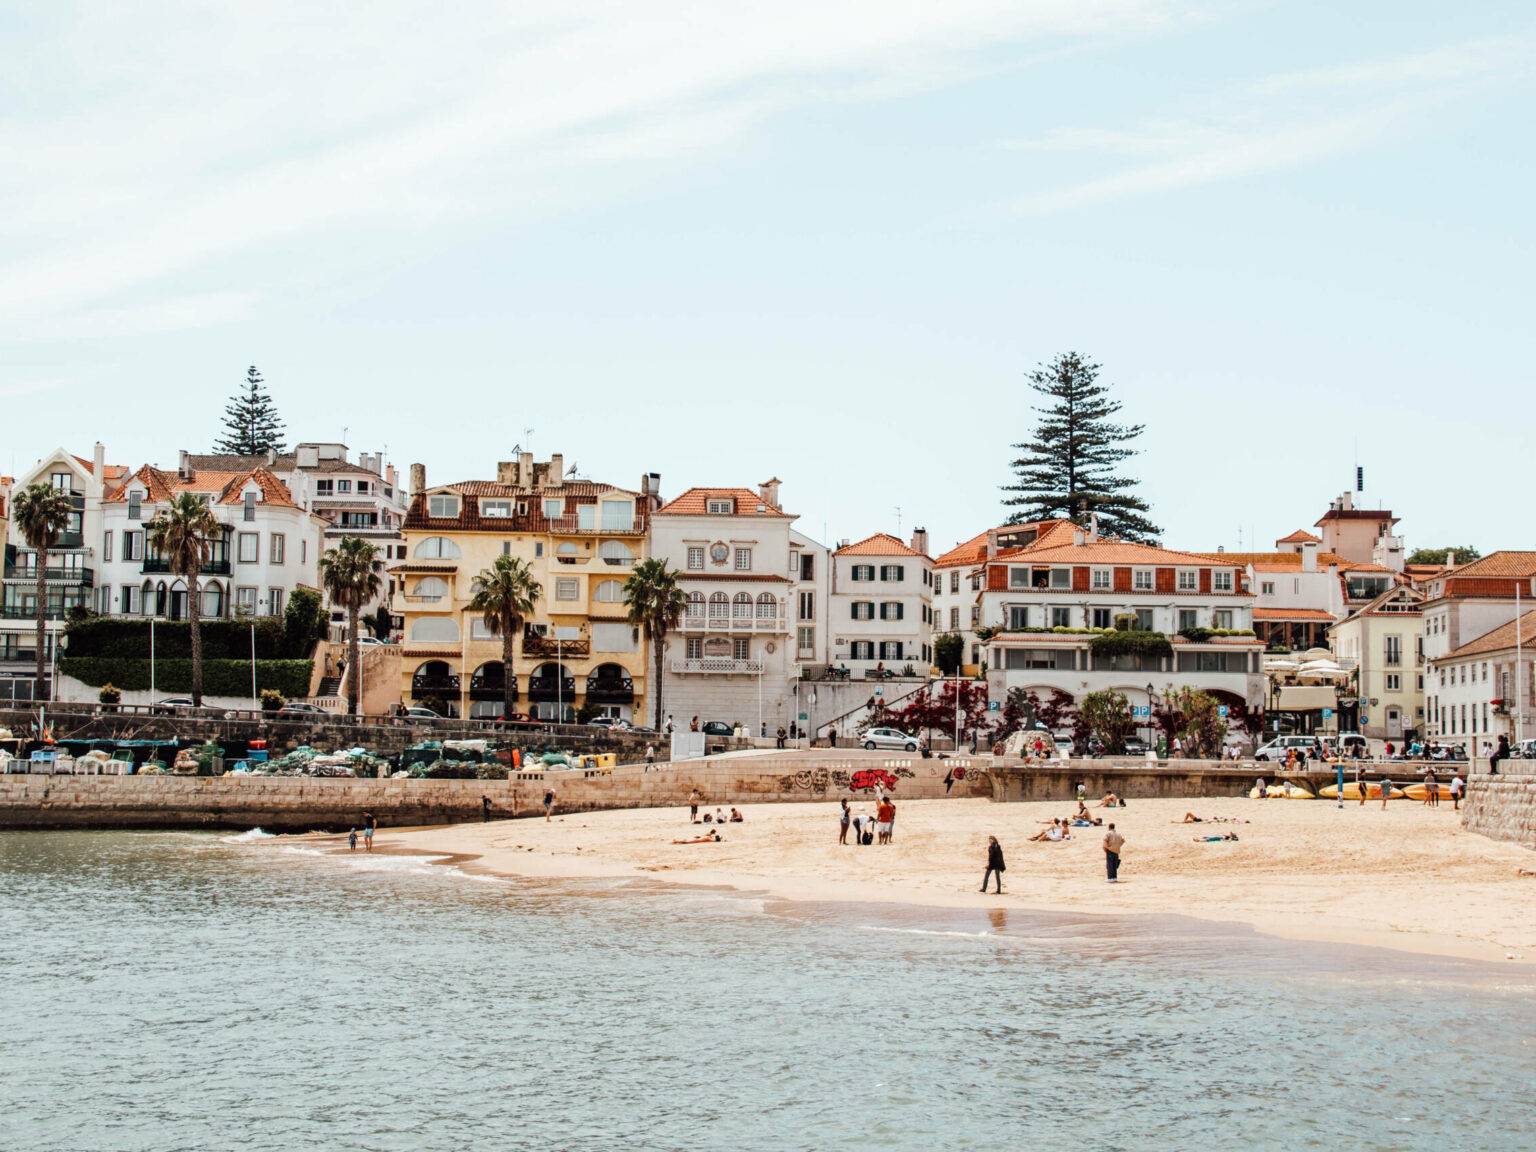 Einer der schönsten Orte: Badestrand mit Palmen und portugiesischen Häusern im Hintergrund